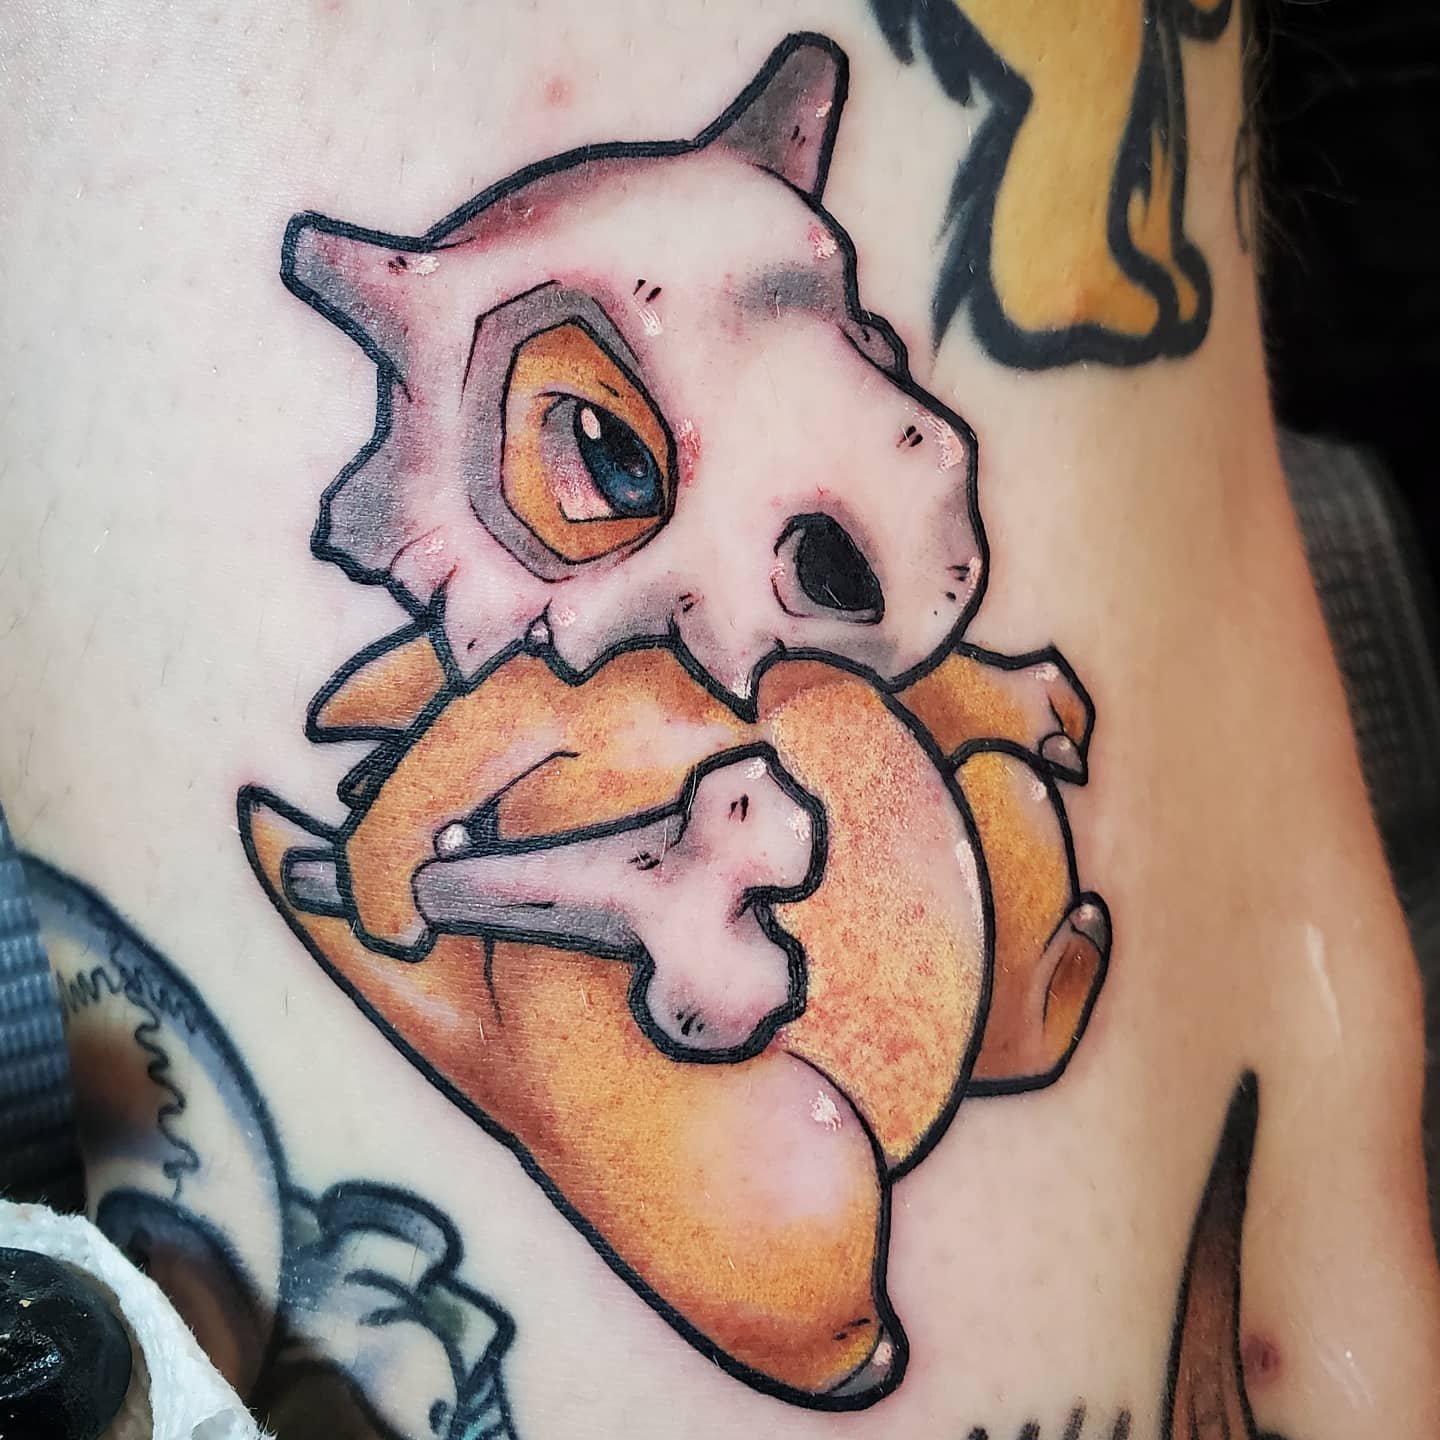 I did a cubone tattoo on a good friend of mine OC  rpokemon